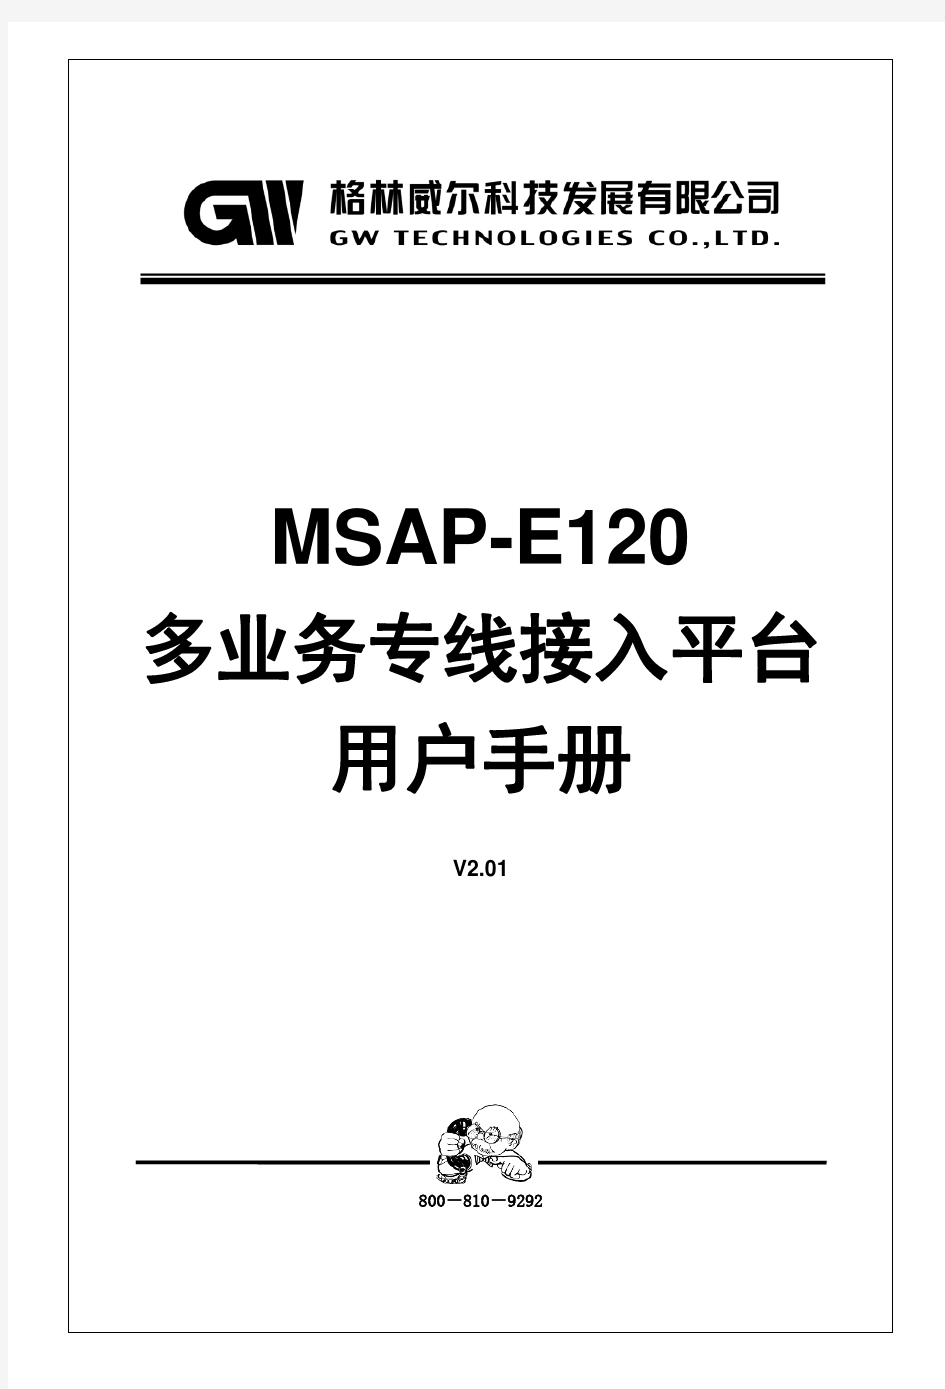 MSAP-E120用户手册V2._01